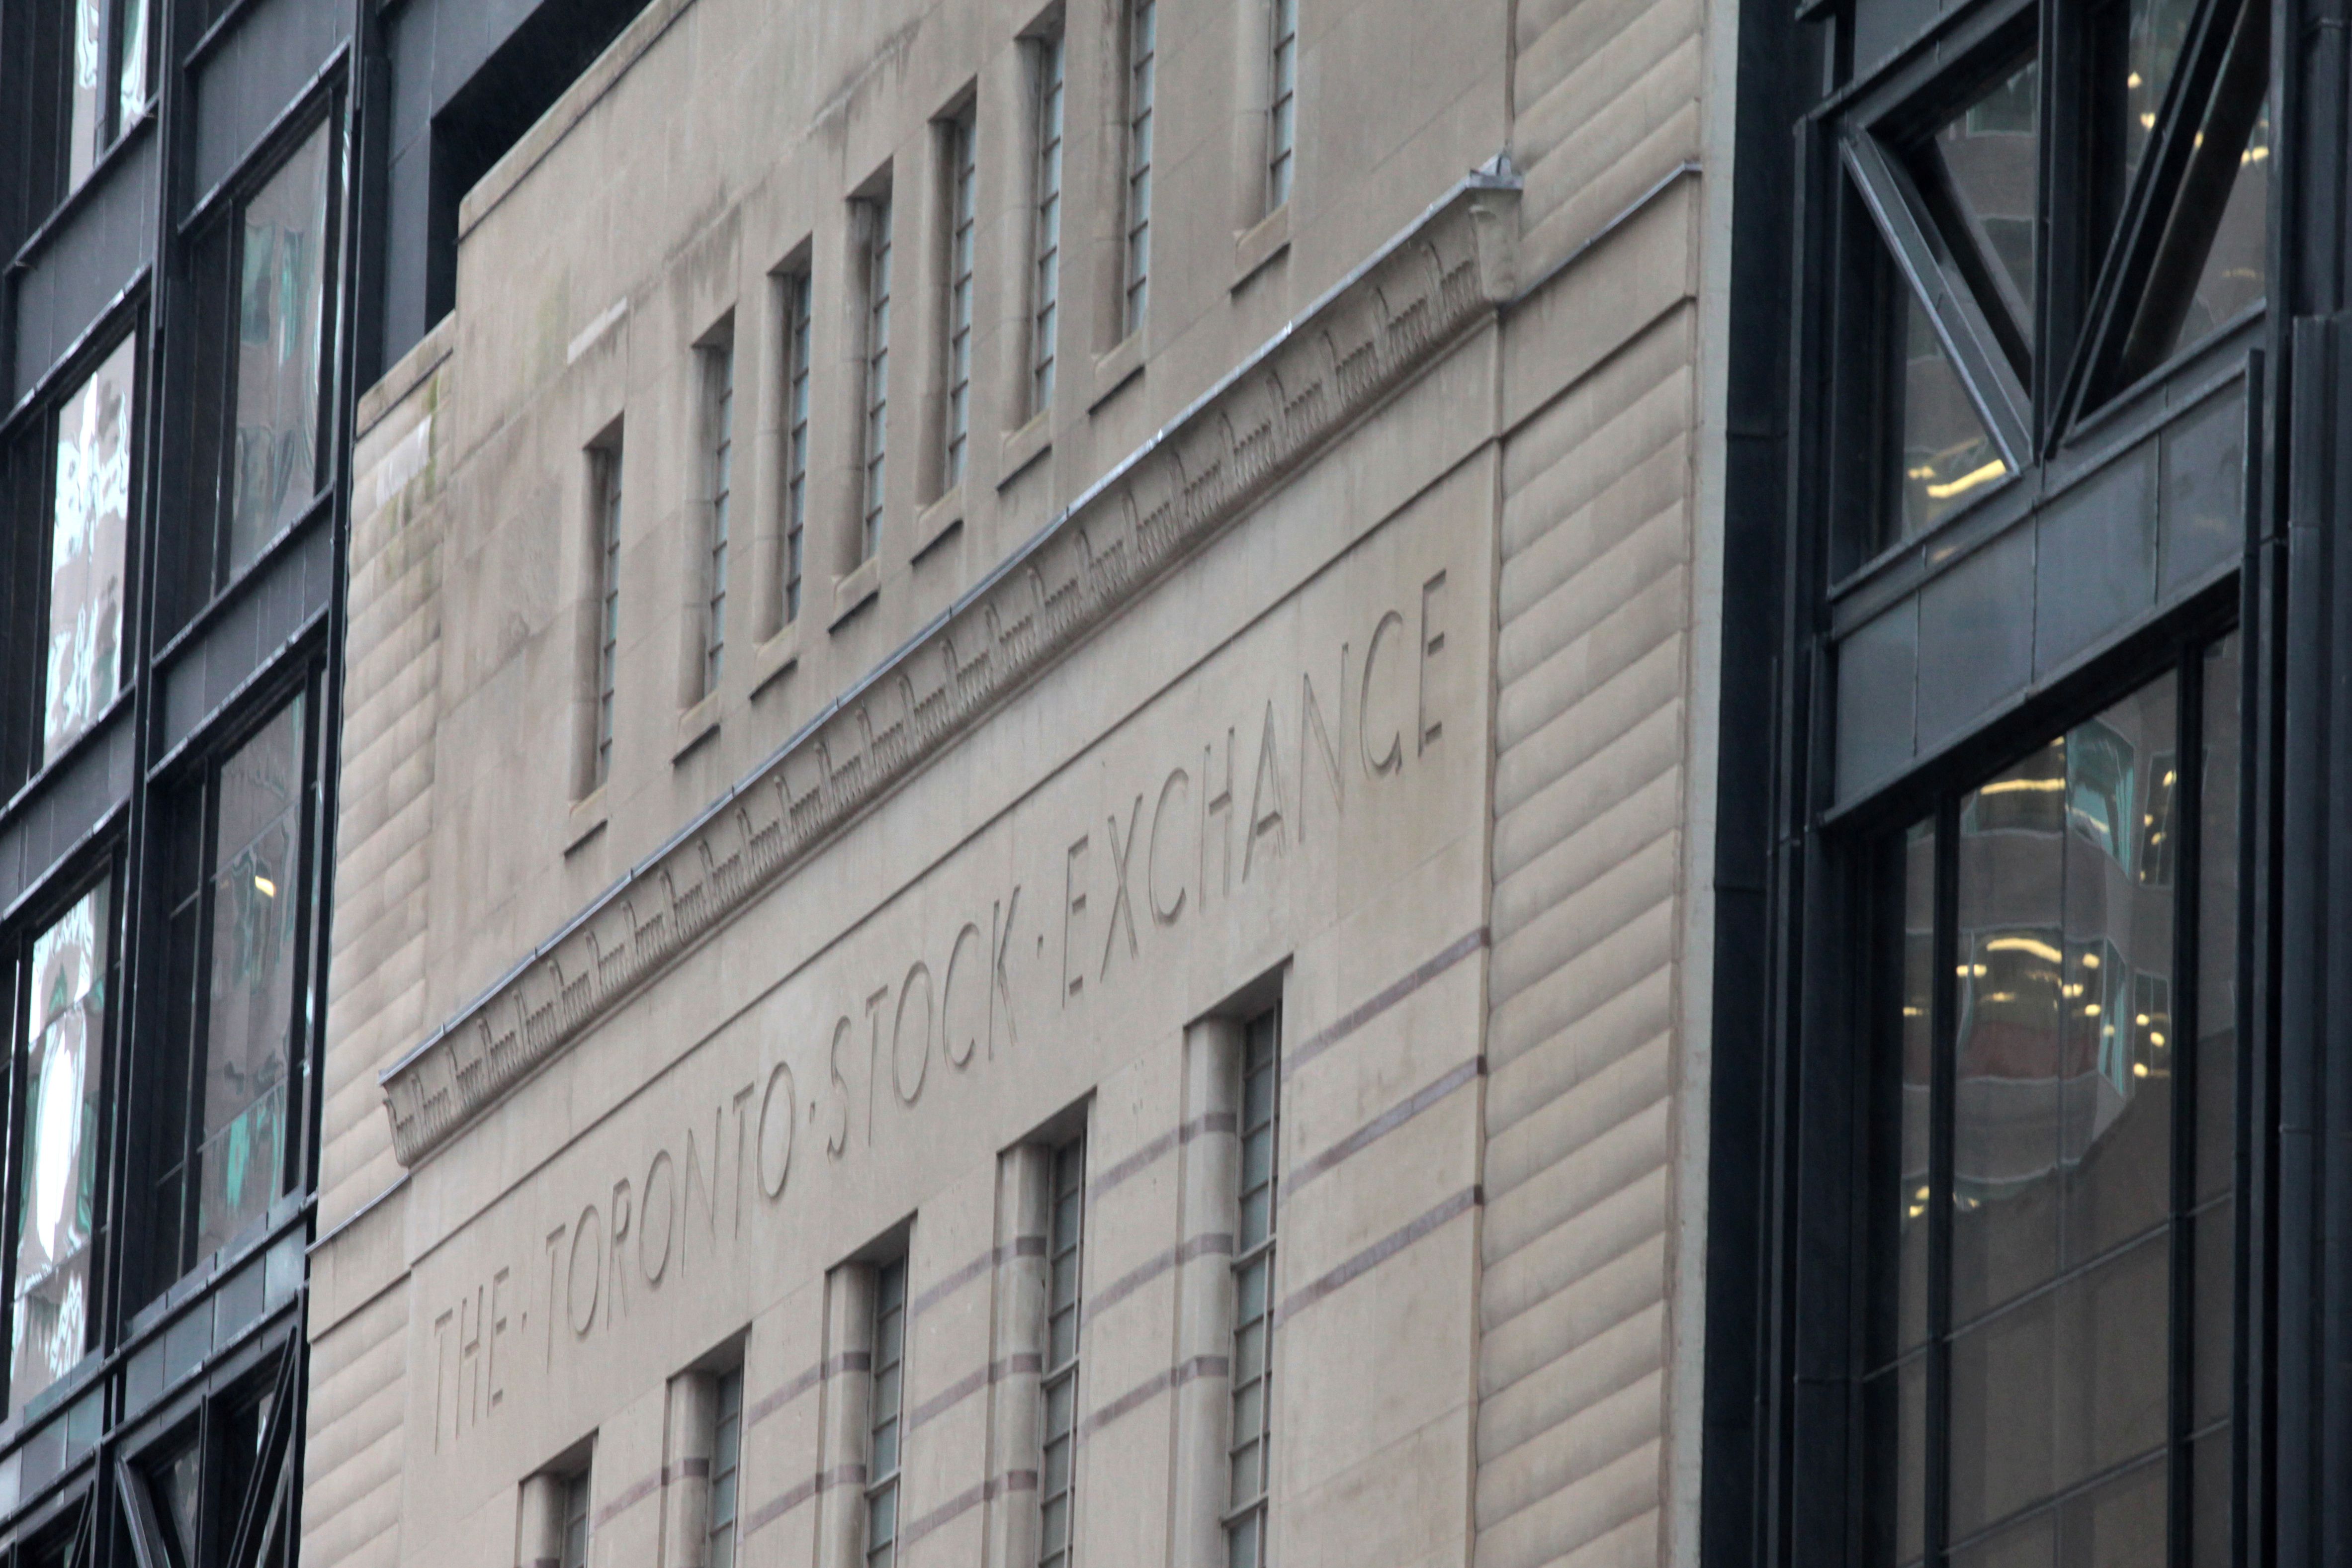 The facade of the original Toronto Stock Exchange building is seen in Toronto